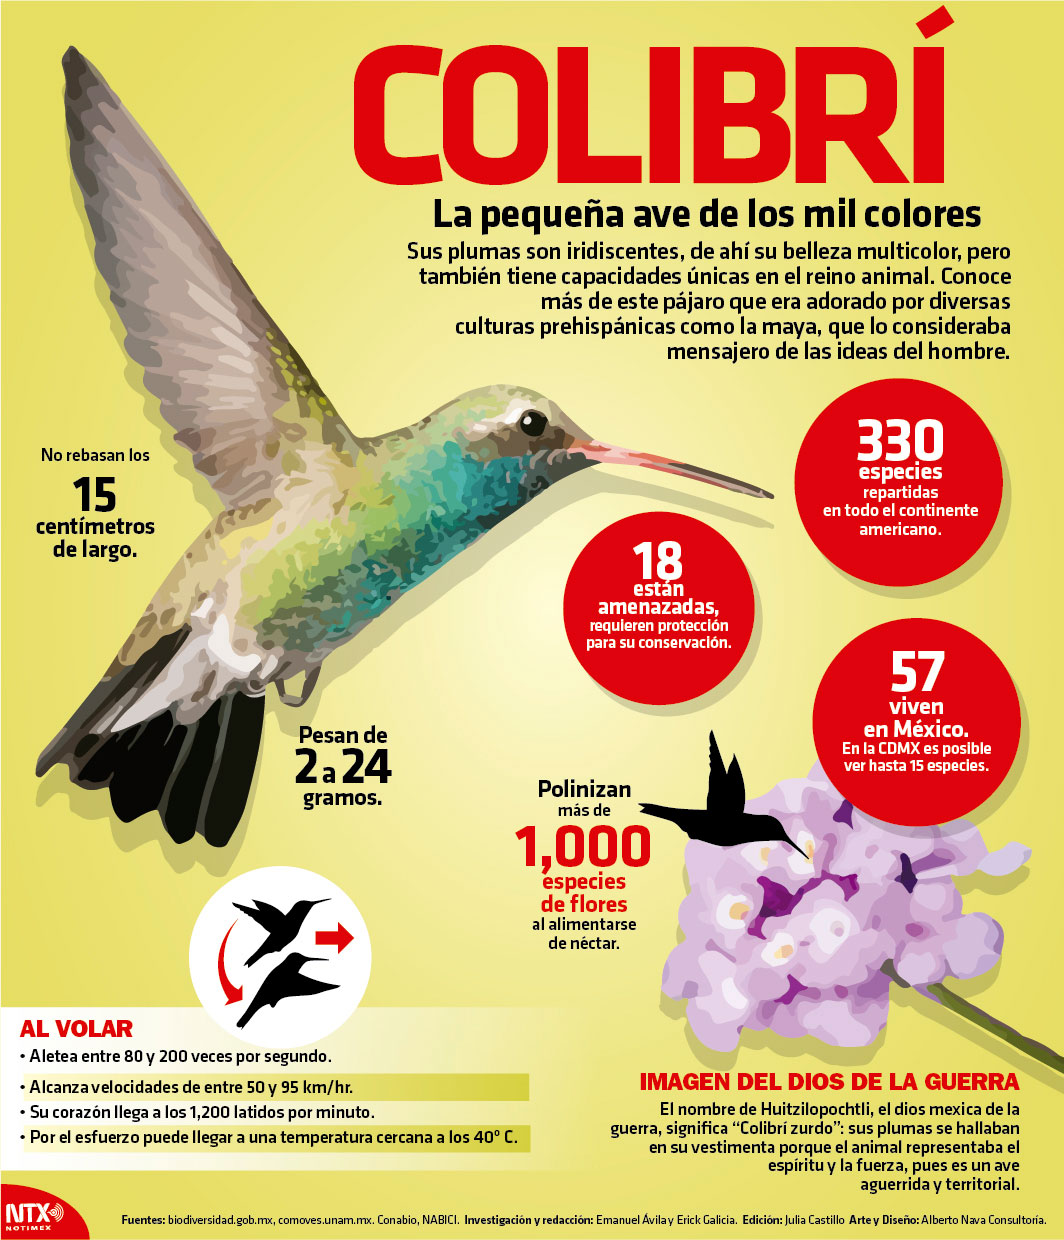 Colibr, la pequea ave de los mil colores